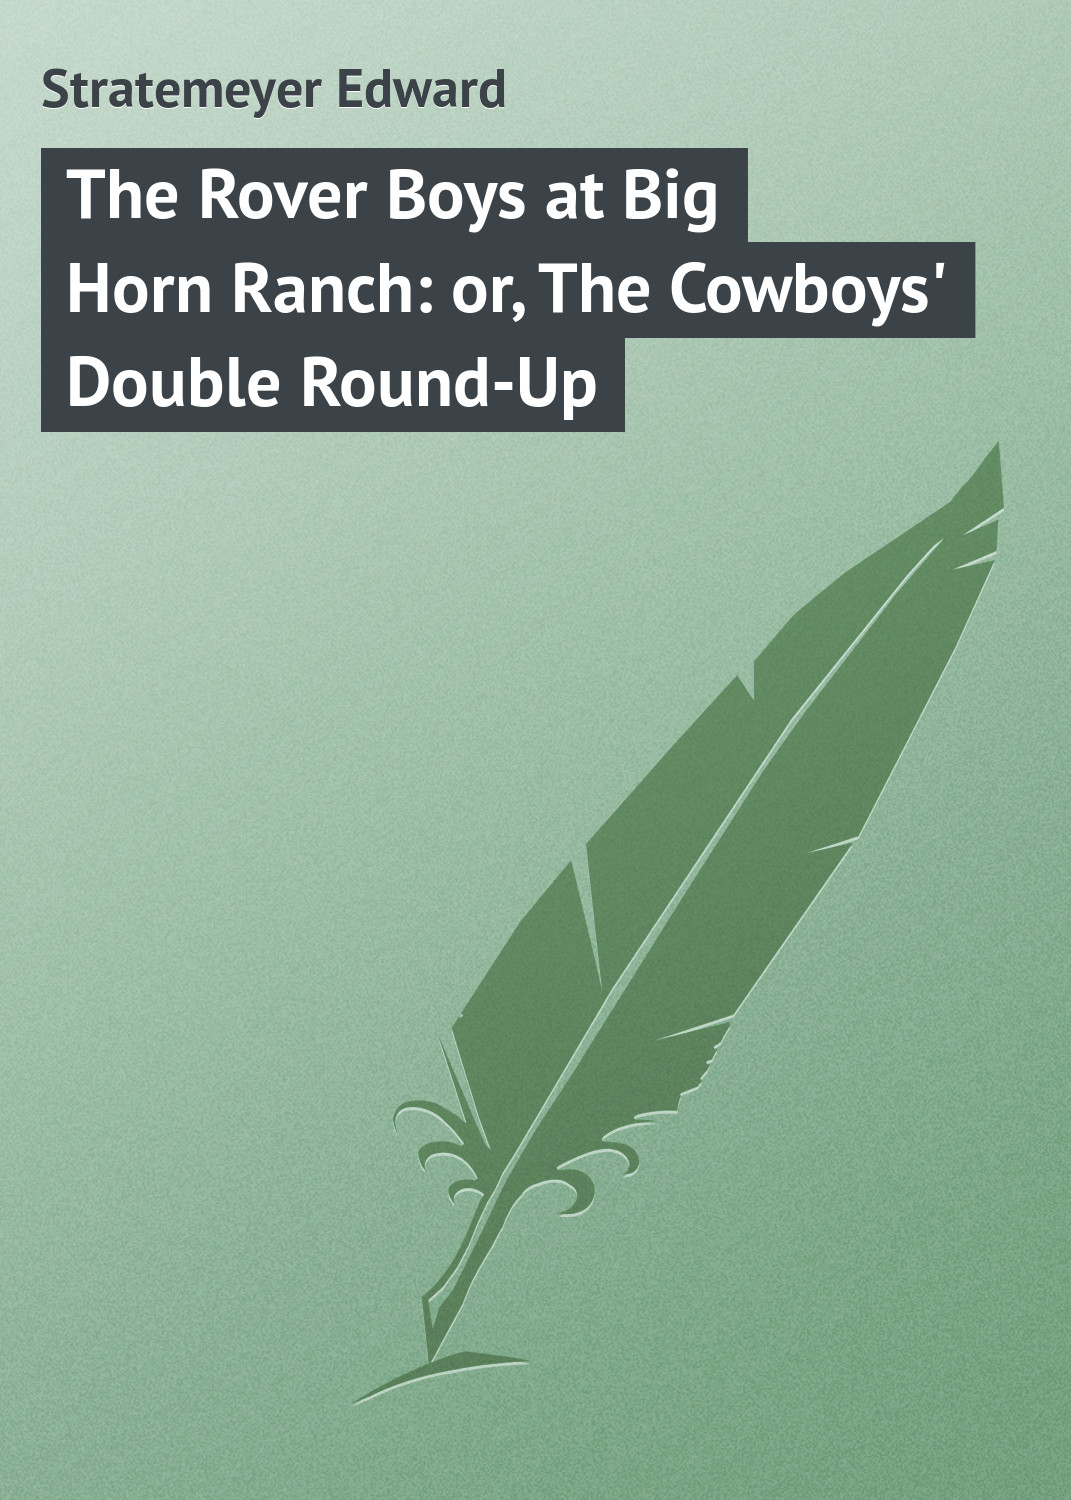 Книга The Rover Boys at Big Horn Ranch: or, The Cowboys' Double Round-Up из серии , созданная Edward Stratemeyer, может относится к жанру Зарубежные детские книги, Зарубежная классика, Иностранные языки. Стоимость электронной книги The Rover Boys at Big Horn Ranch: or, The Cowboys' Double Round-Up с идентификатором 23152667 составляет 5.99 руб.